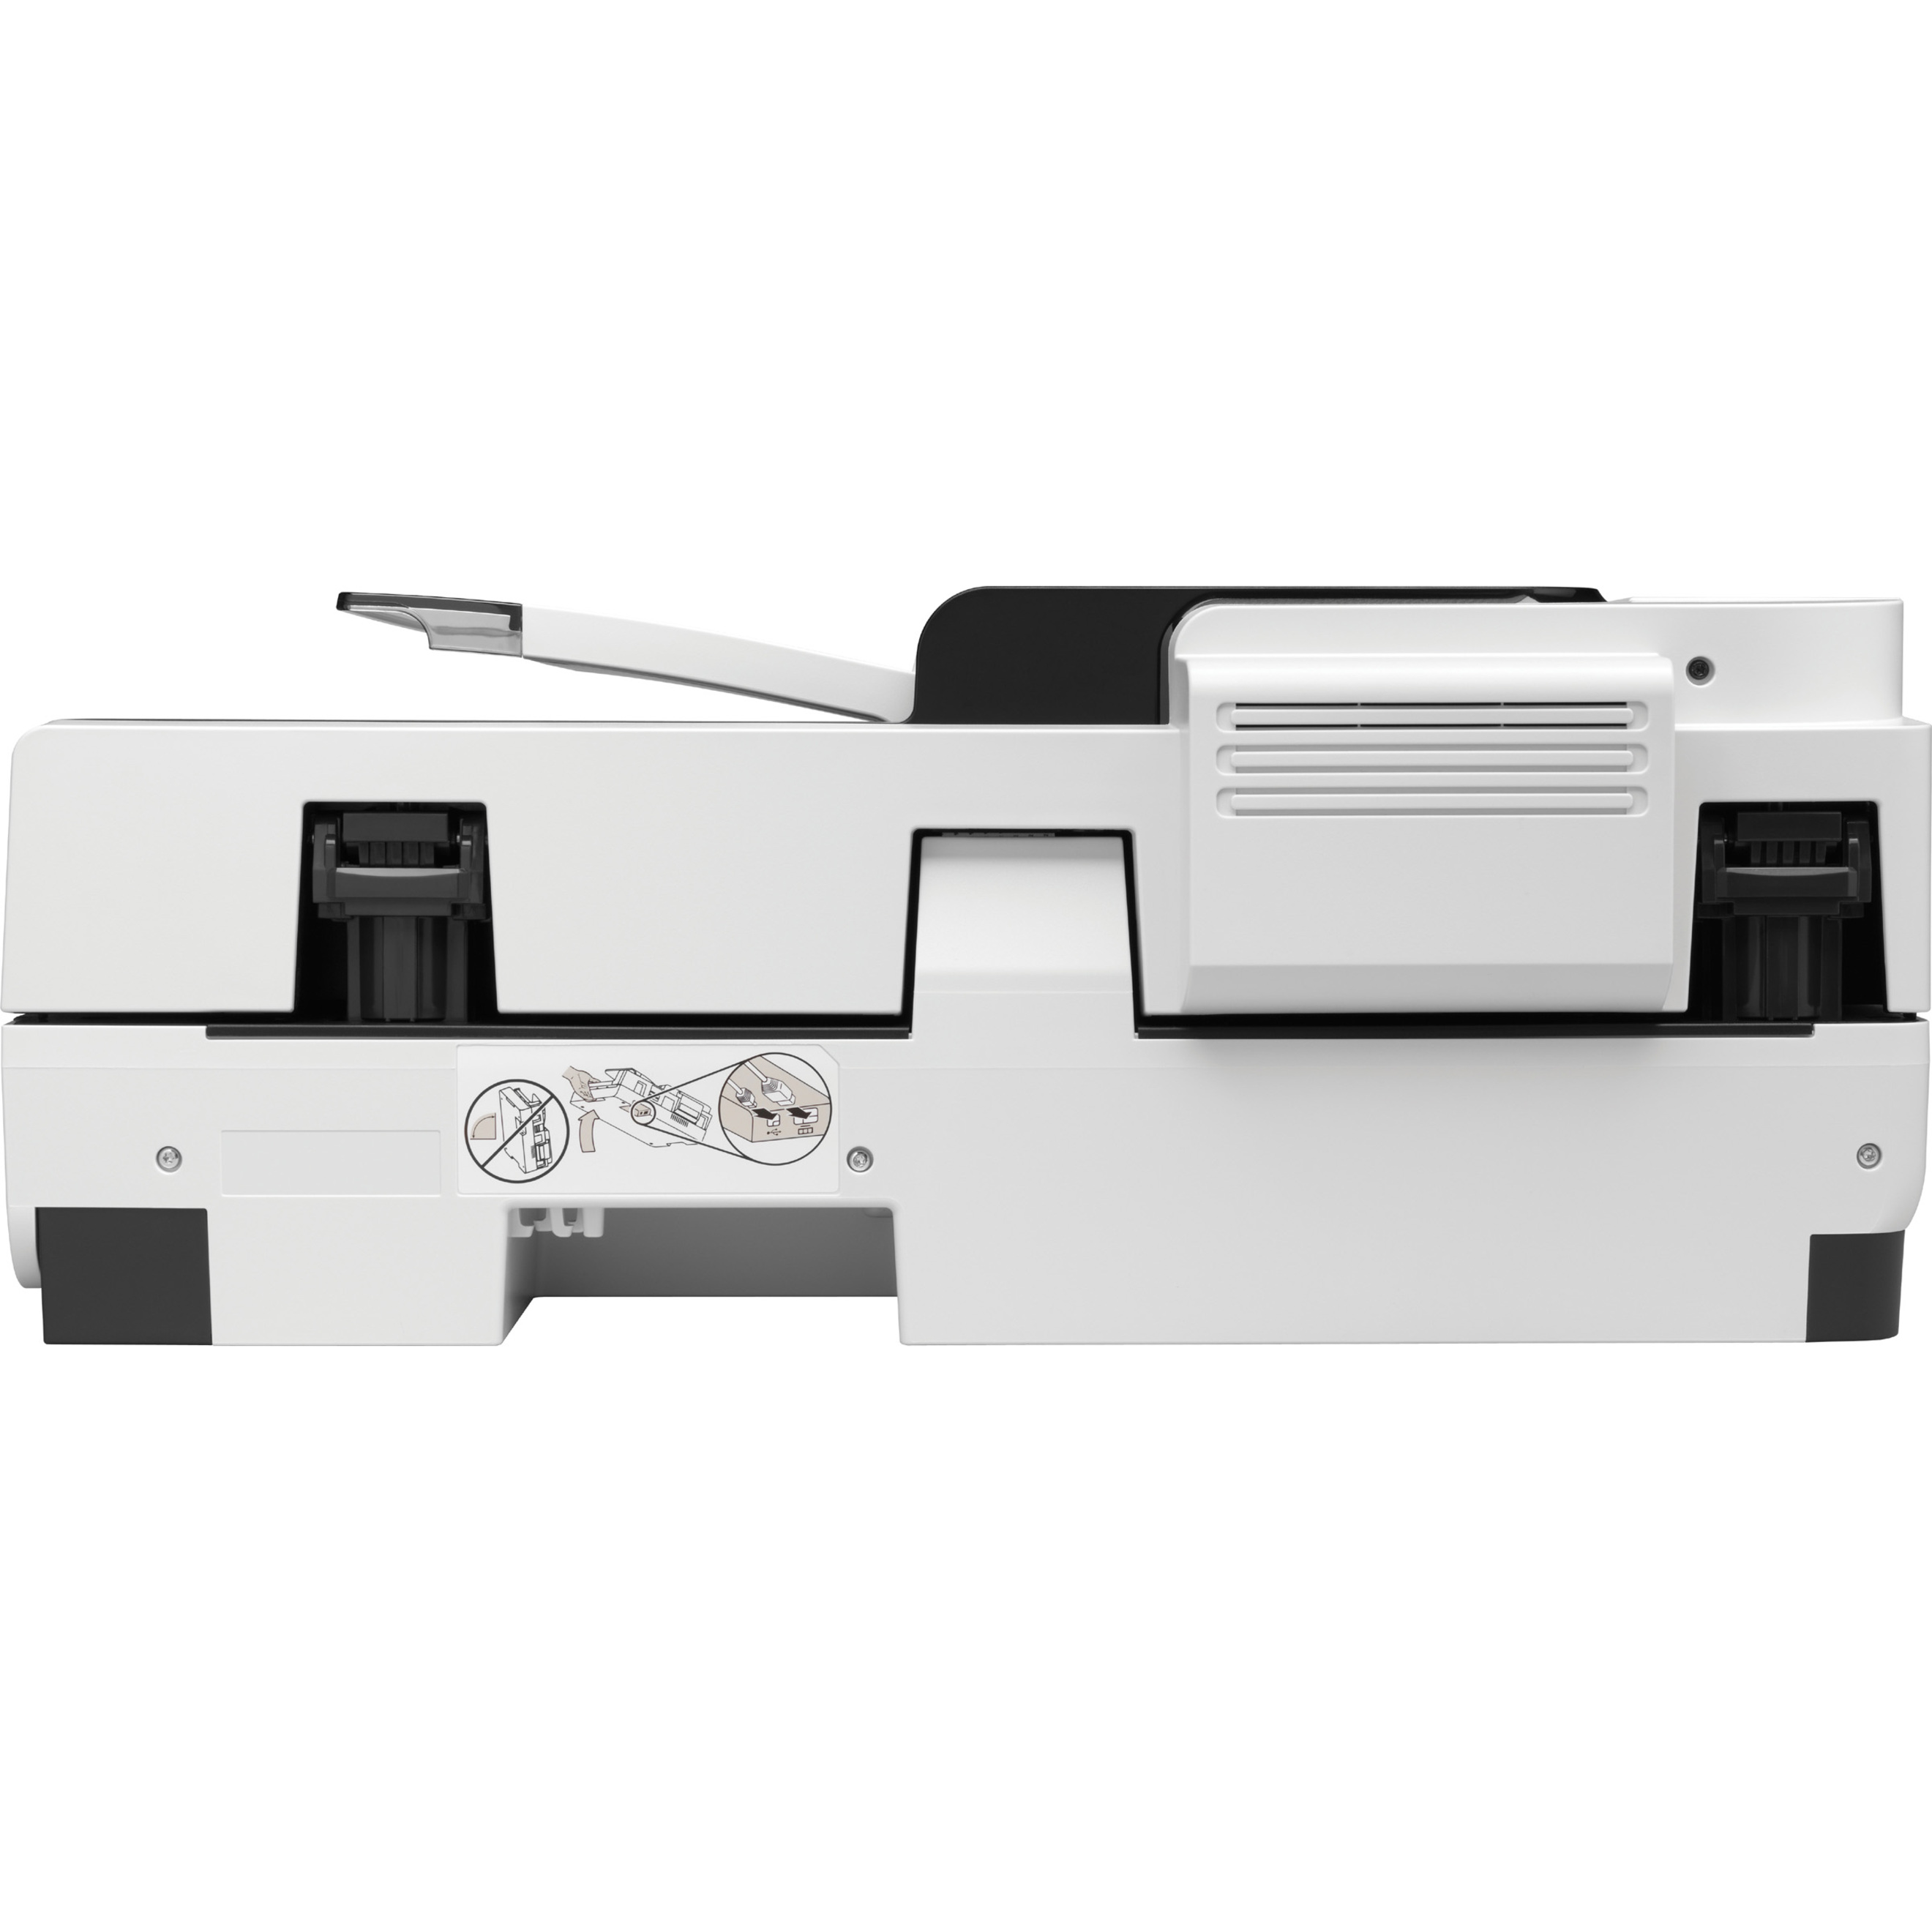 HP Scanjet 7500 Flatbed Scanner, 600 dpi Optical - image 4 of 5